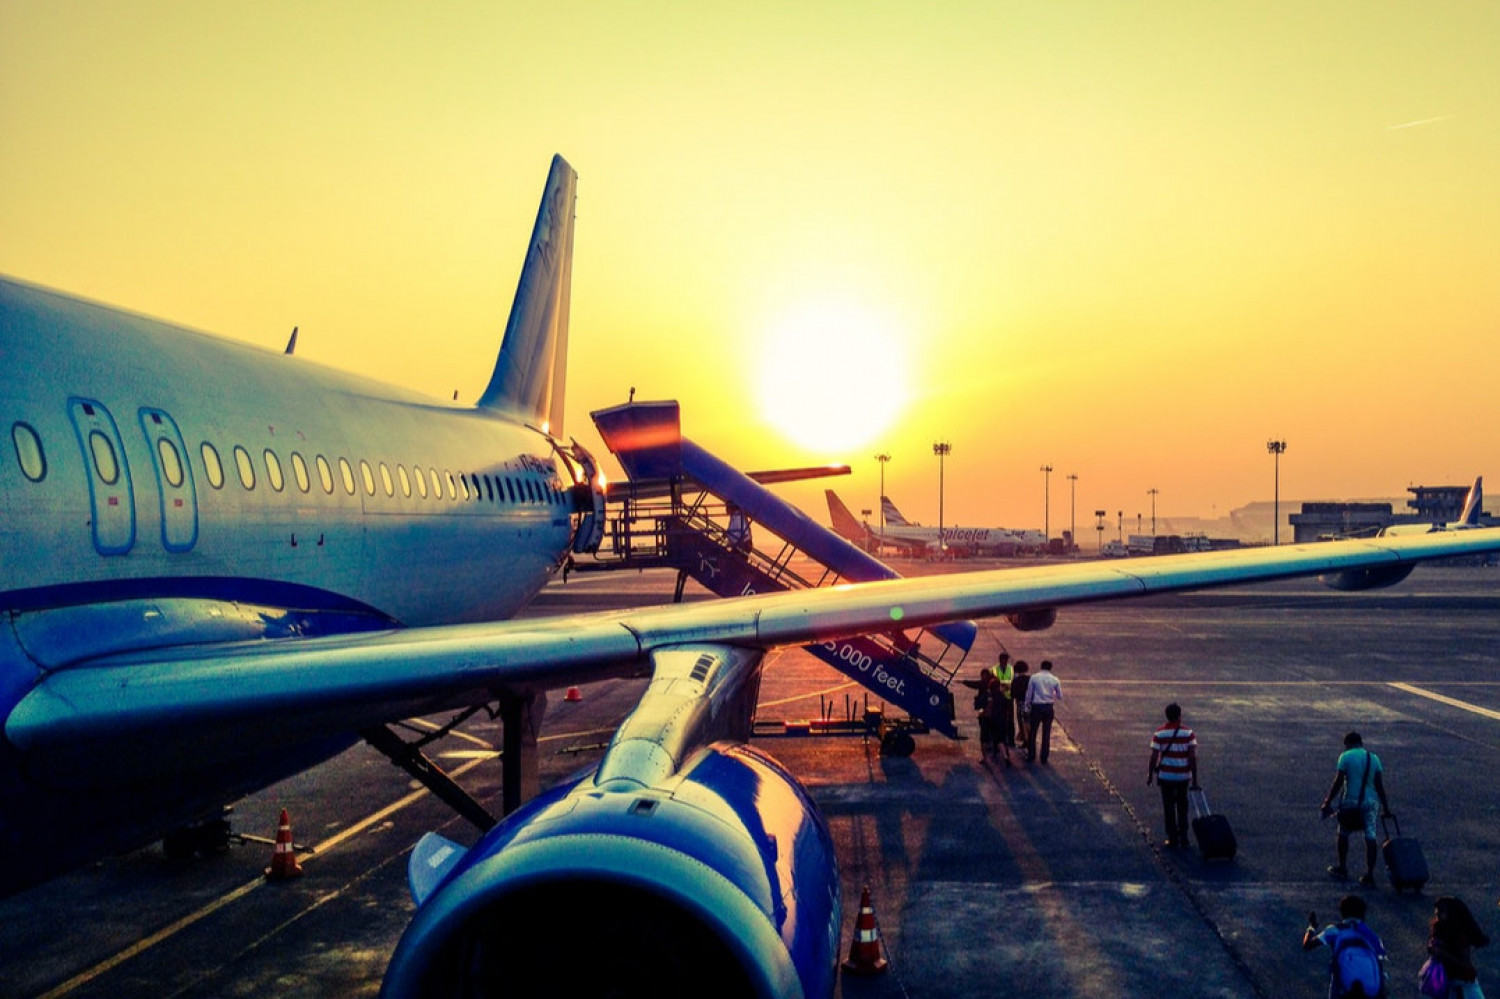 Ny forpligtelse for flyselskaber til at indsamle og videregive passageroplysninger